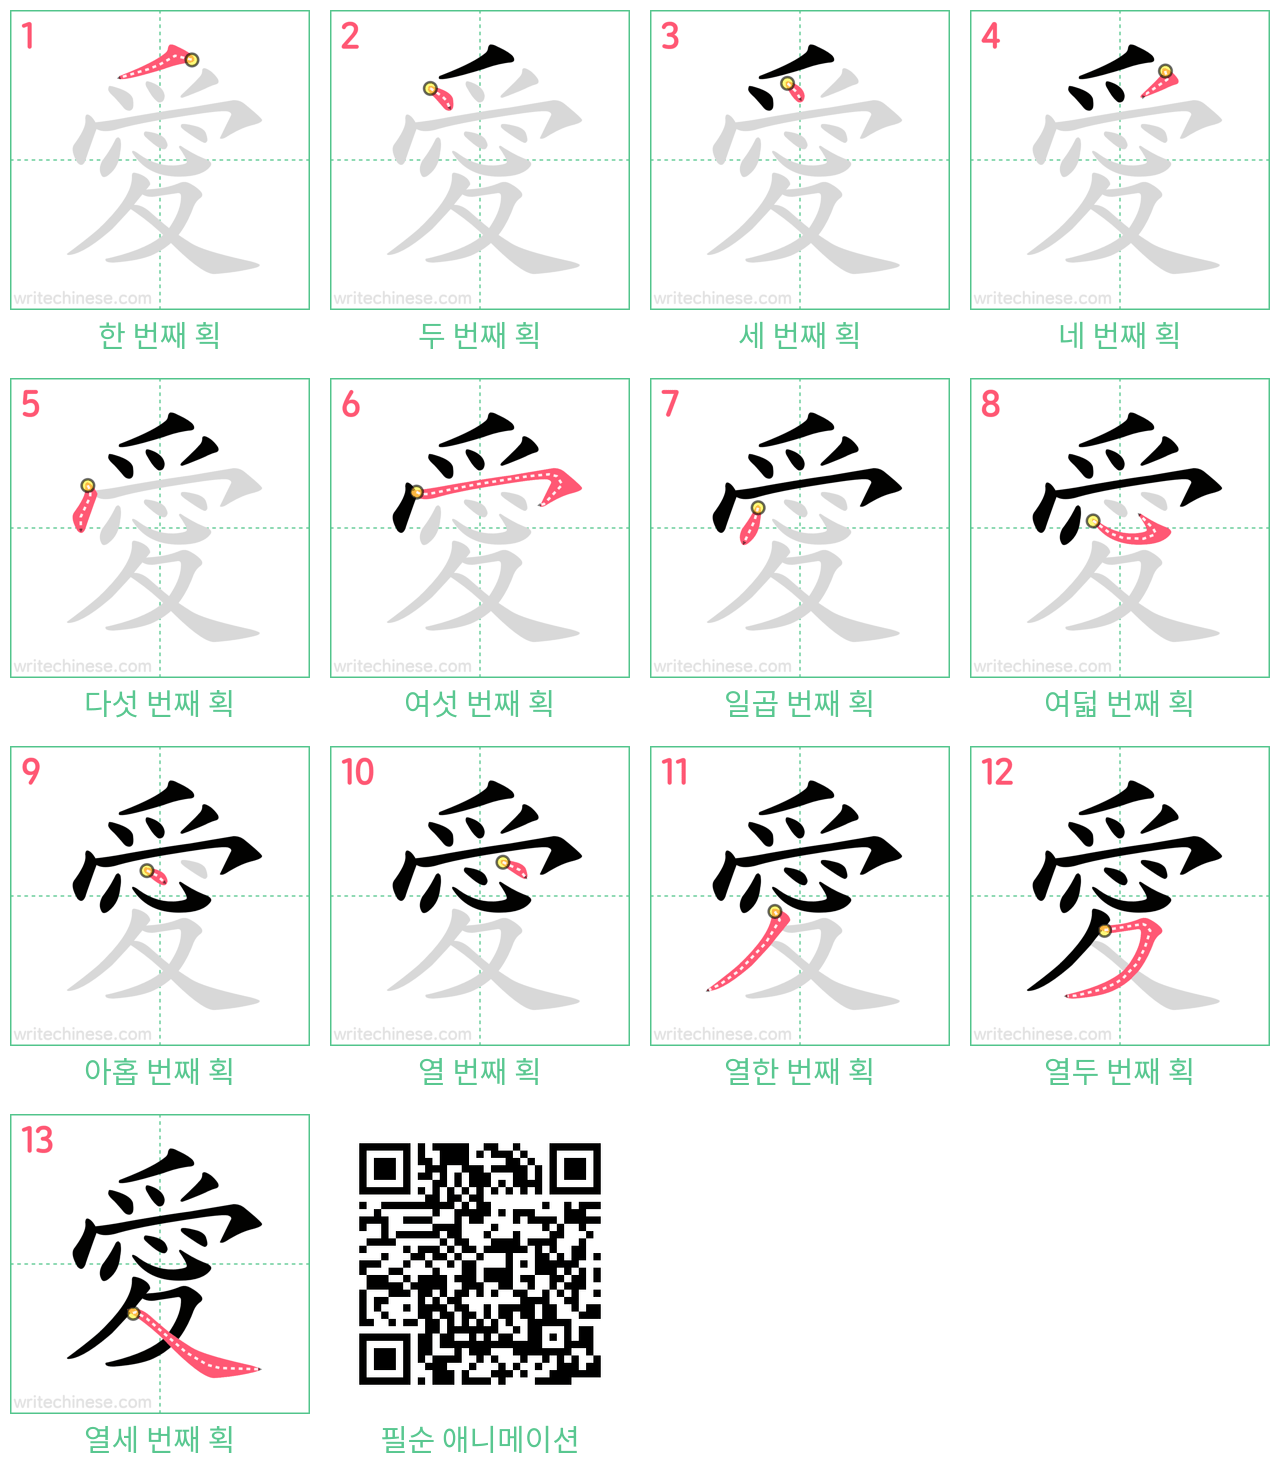 愛 step-by-step stroke order diagrams